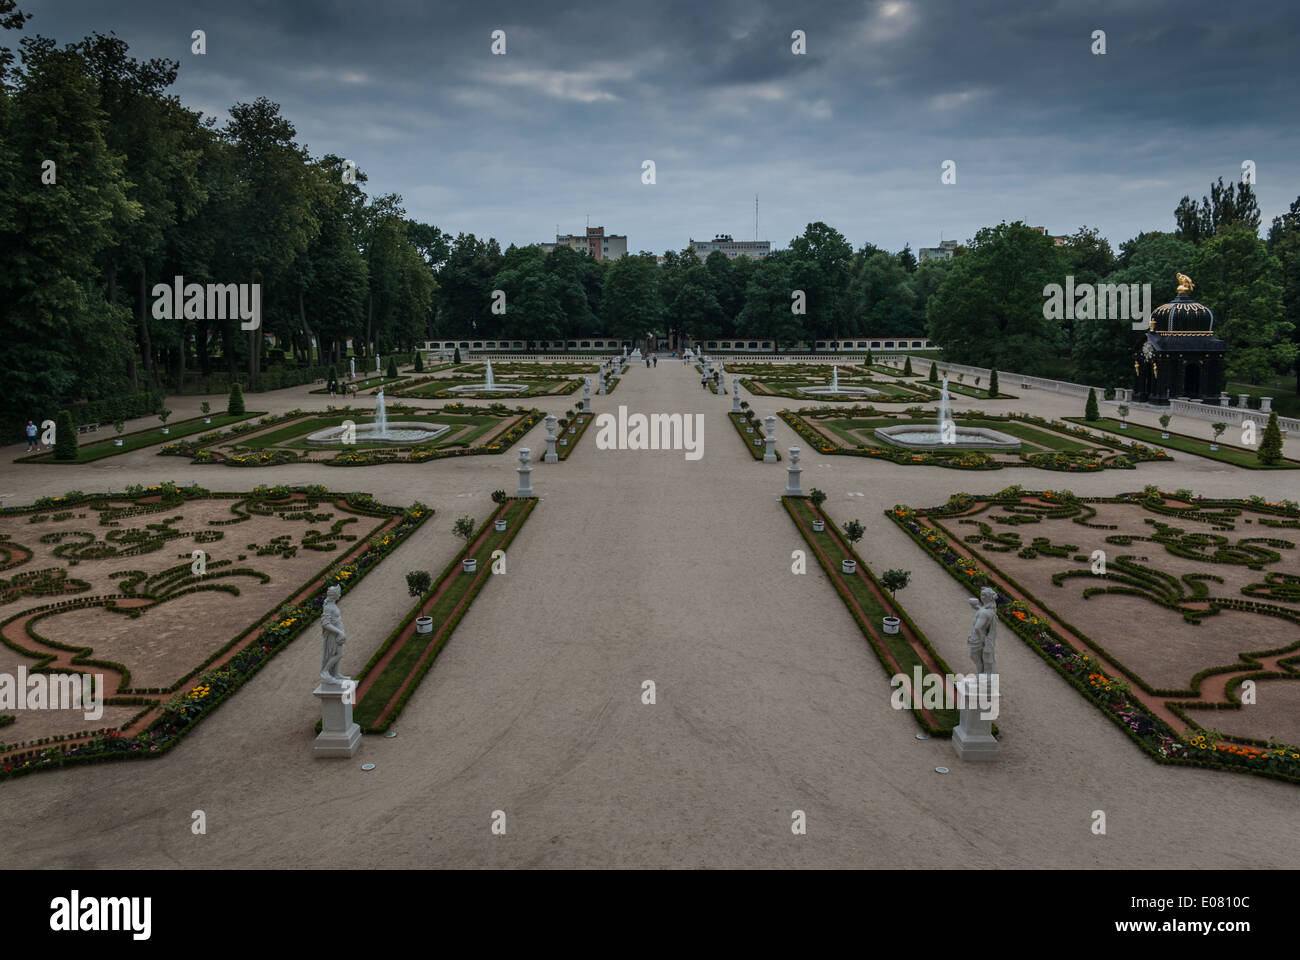 French Garden, Pałac Branickich (Branicki's Palace), Białystok (Bialystok), Podlasie, eastern Poland Stock Photo